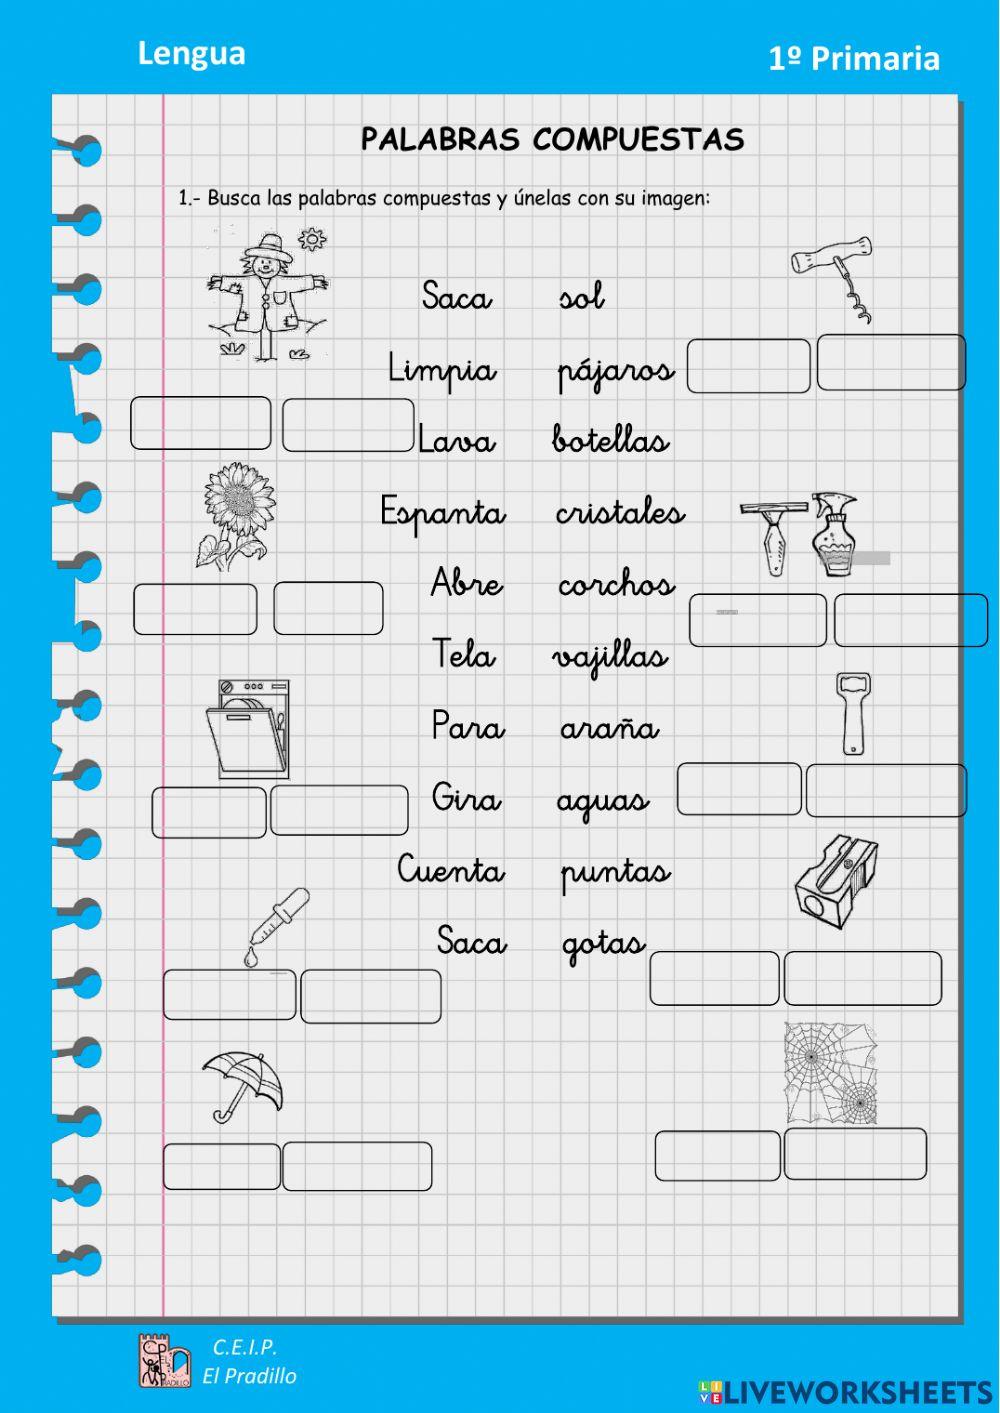 Palabras compuestas activity for primero de primaria | Live Worksheets